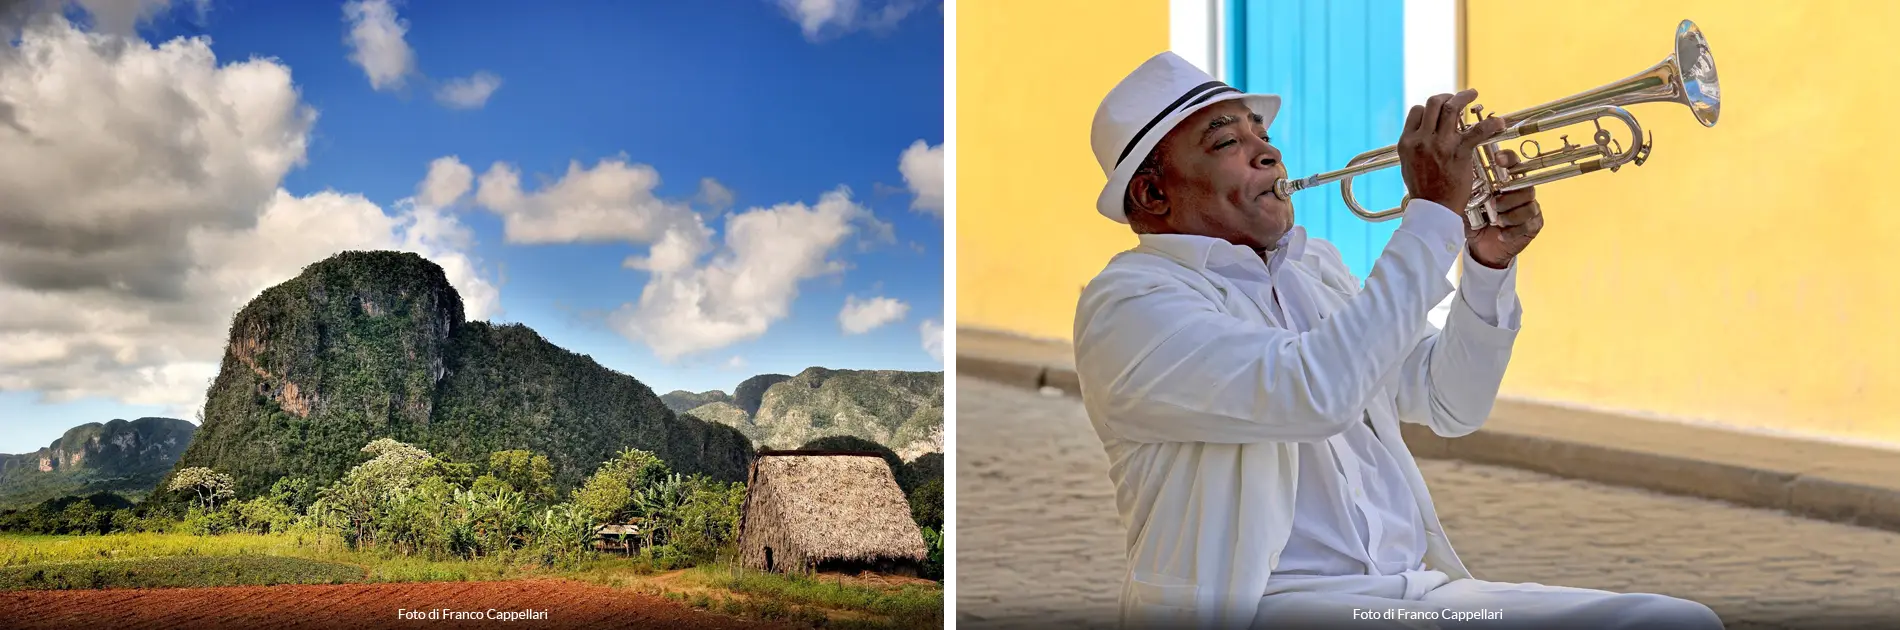 Colori e suoni di Cuba